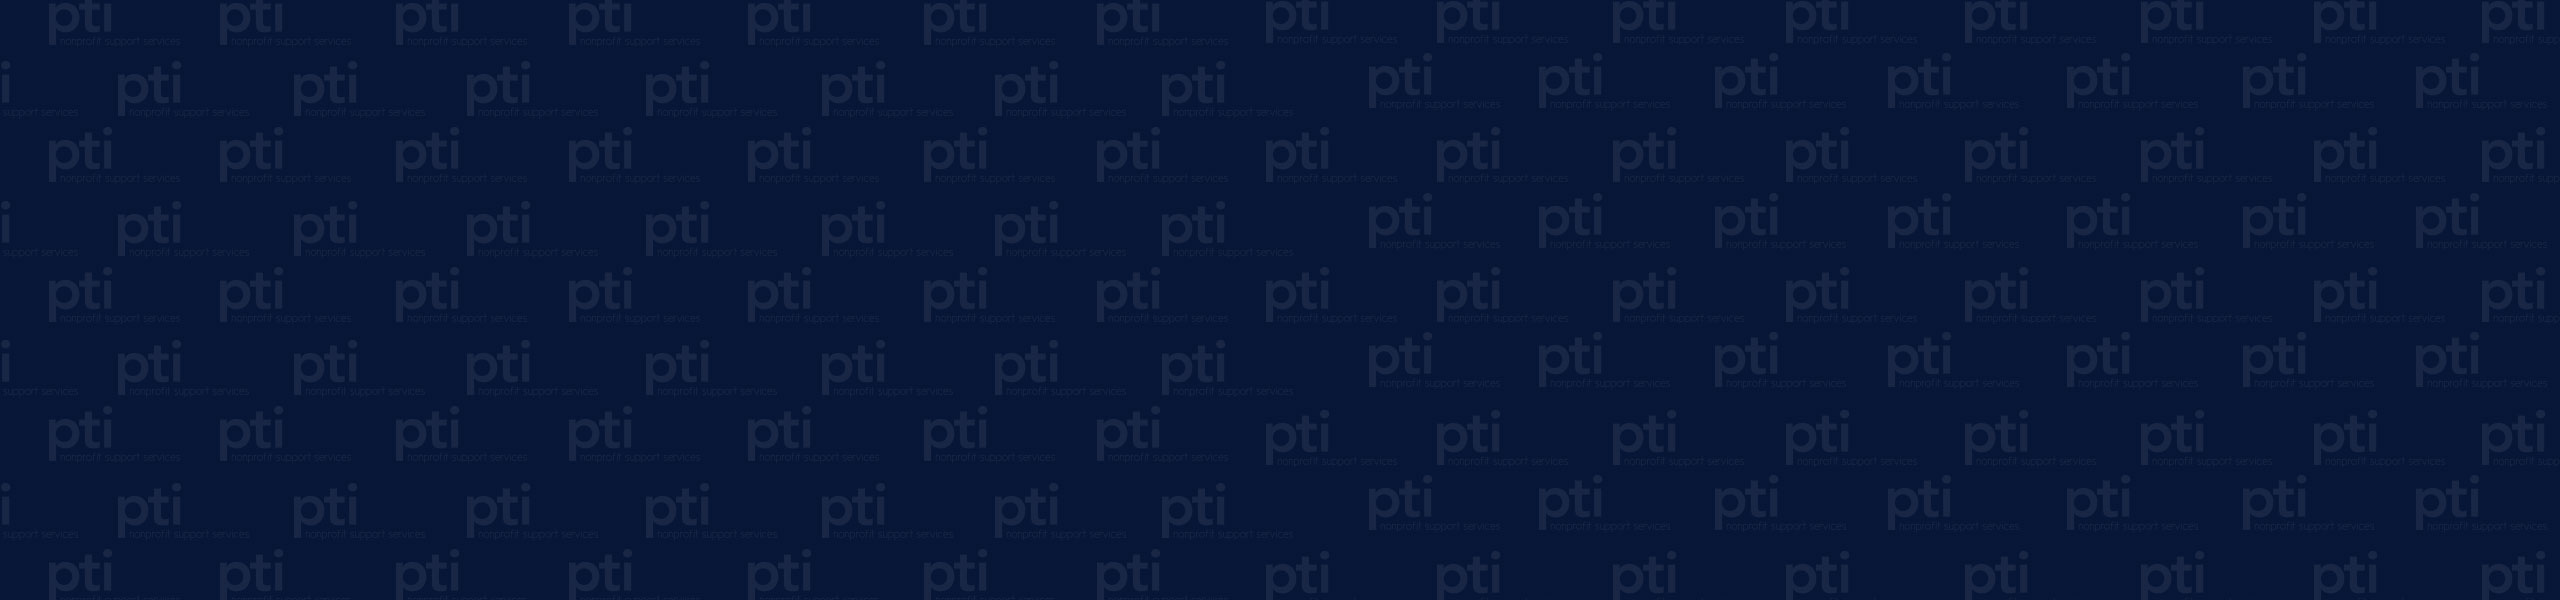 pti-pattern-header-image-2560x600-dark